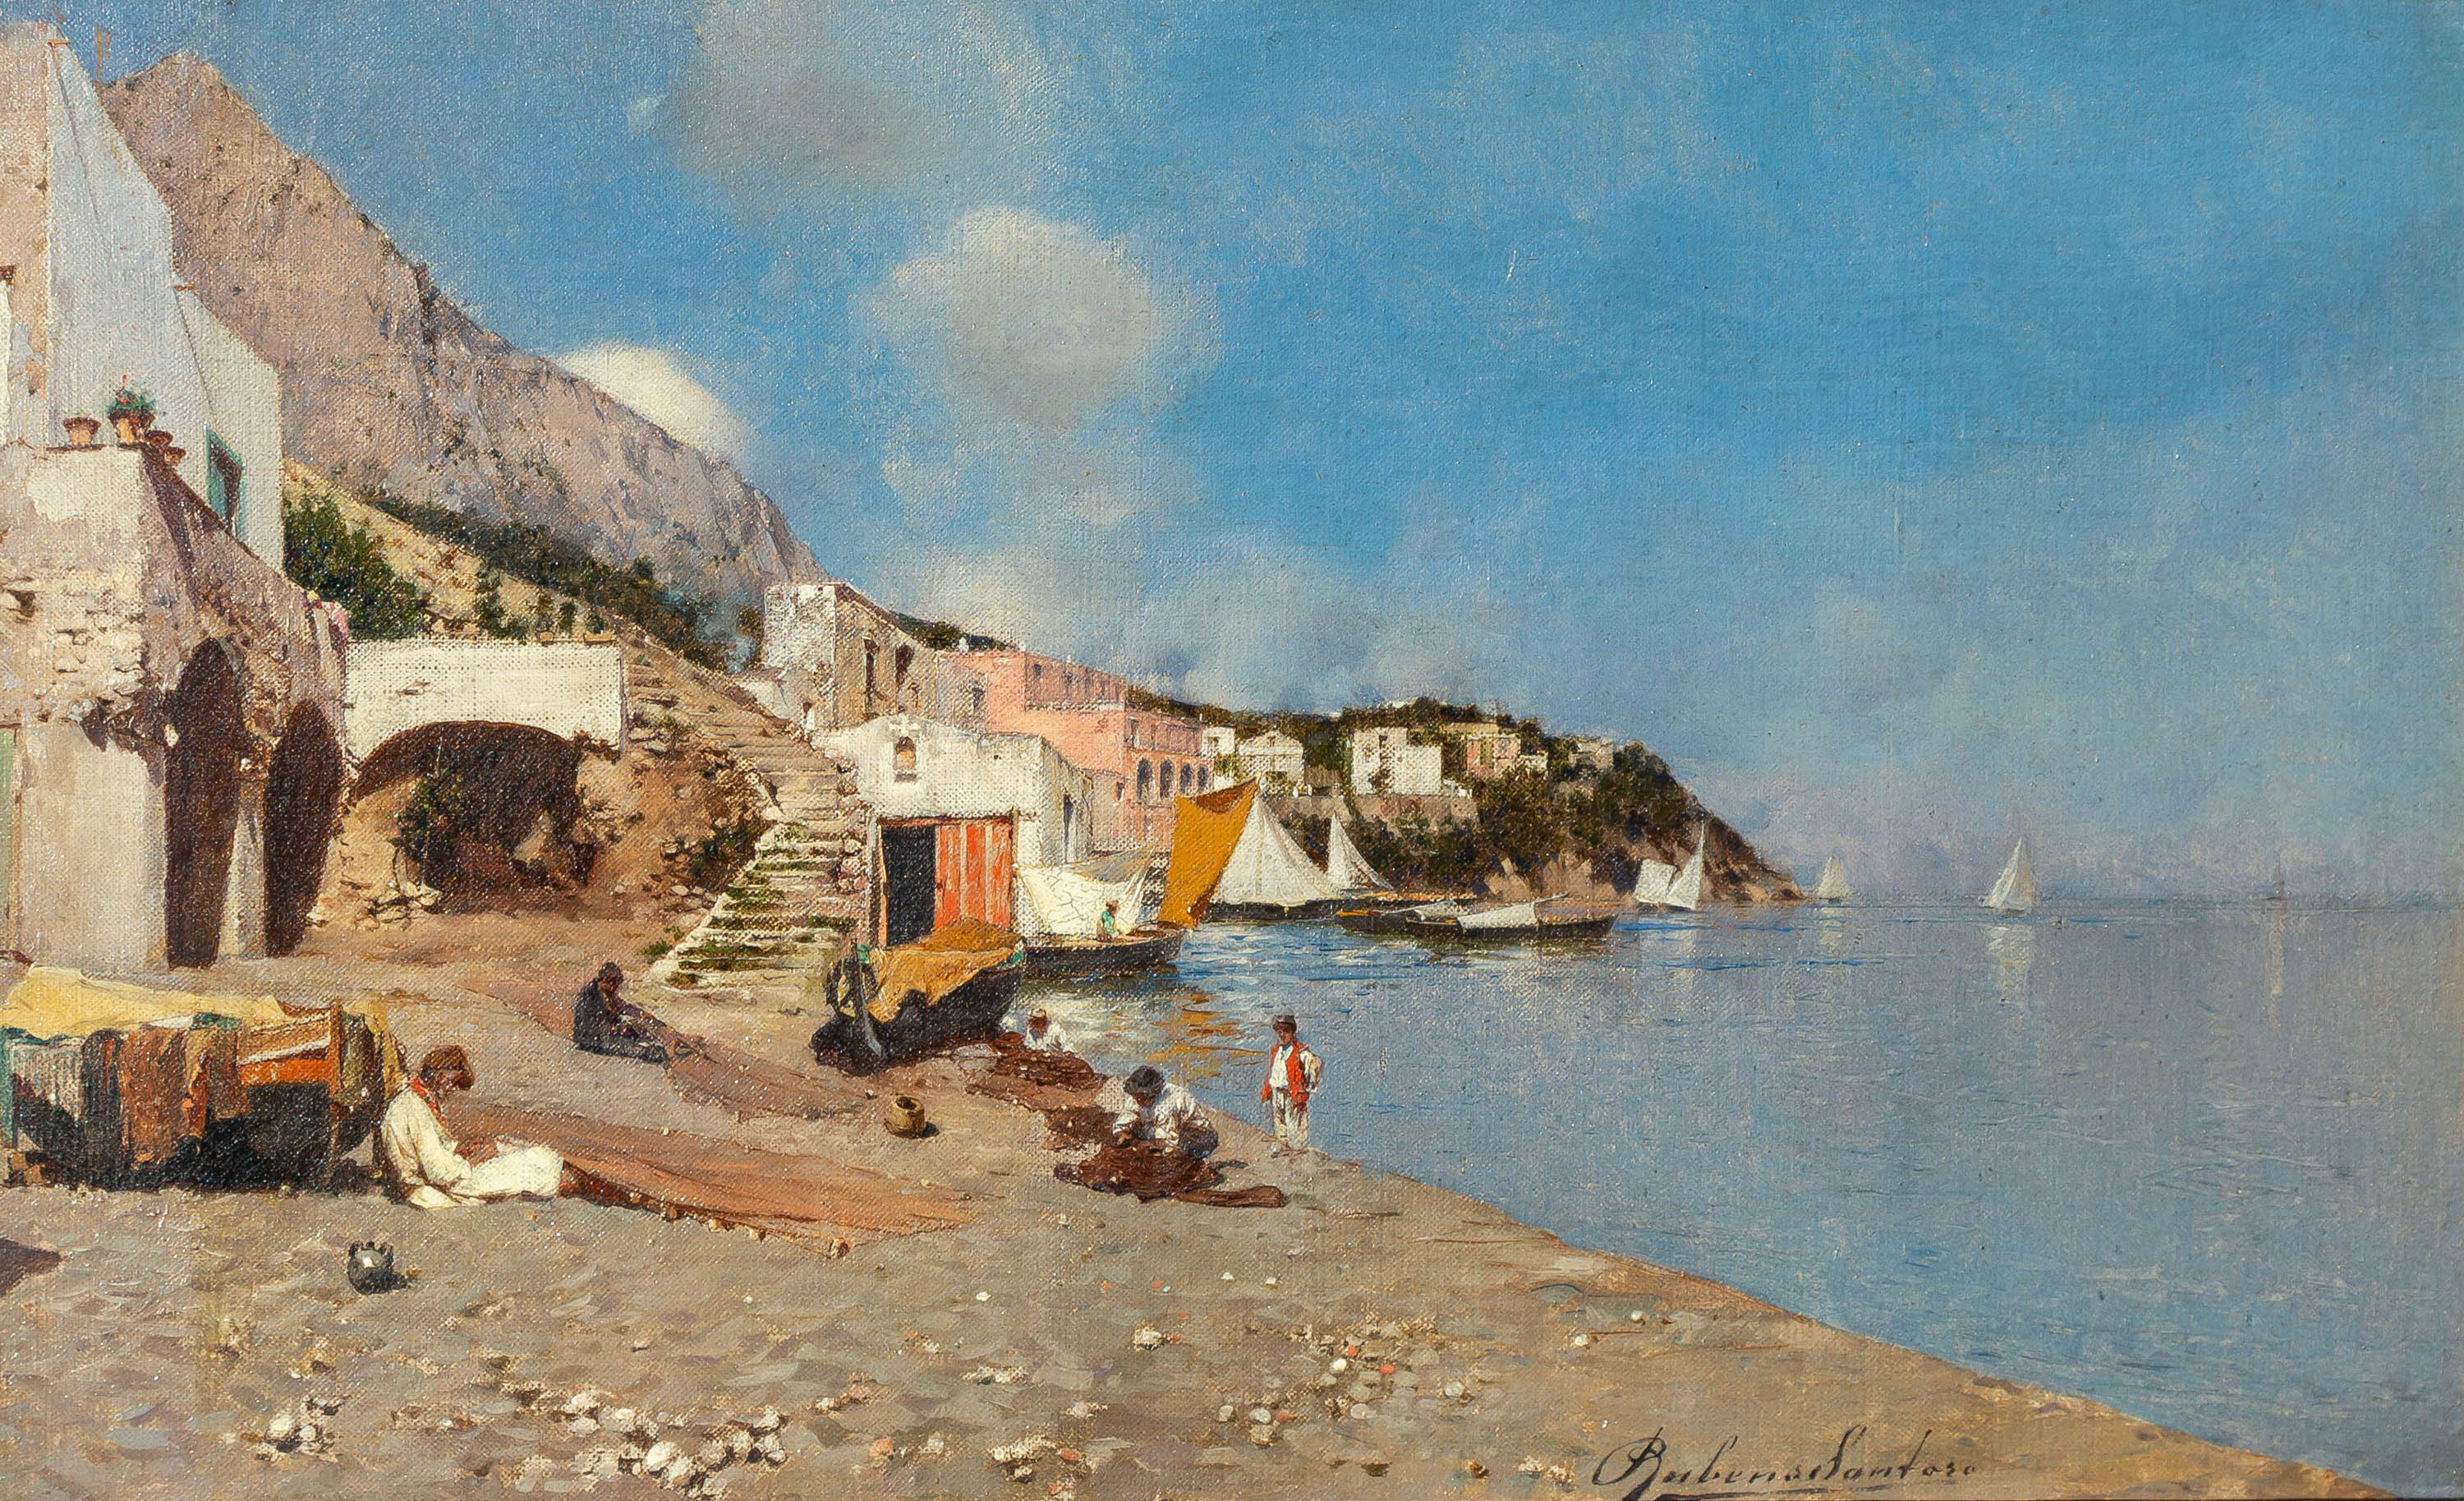 RUBENS SANTORO (ITALIAN, 1859-1942)